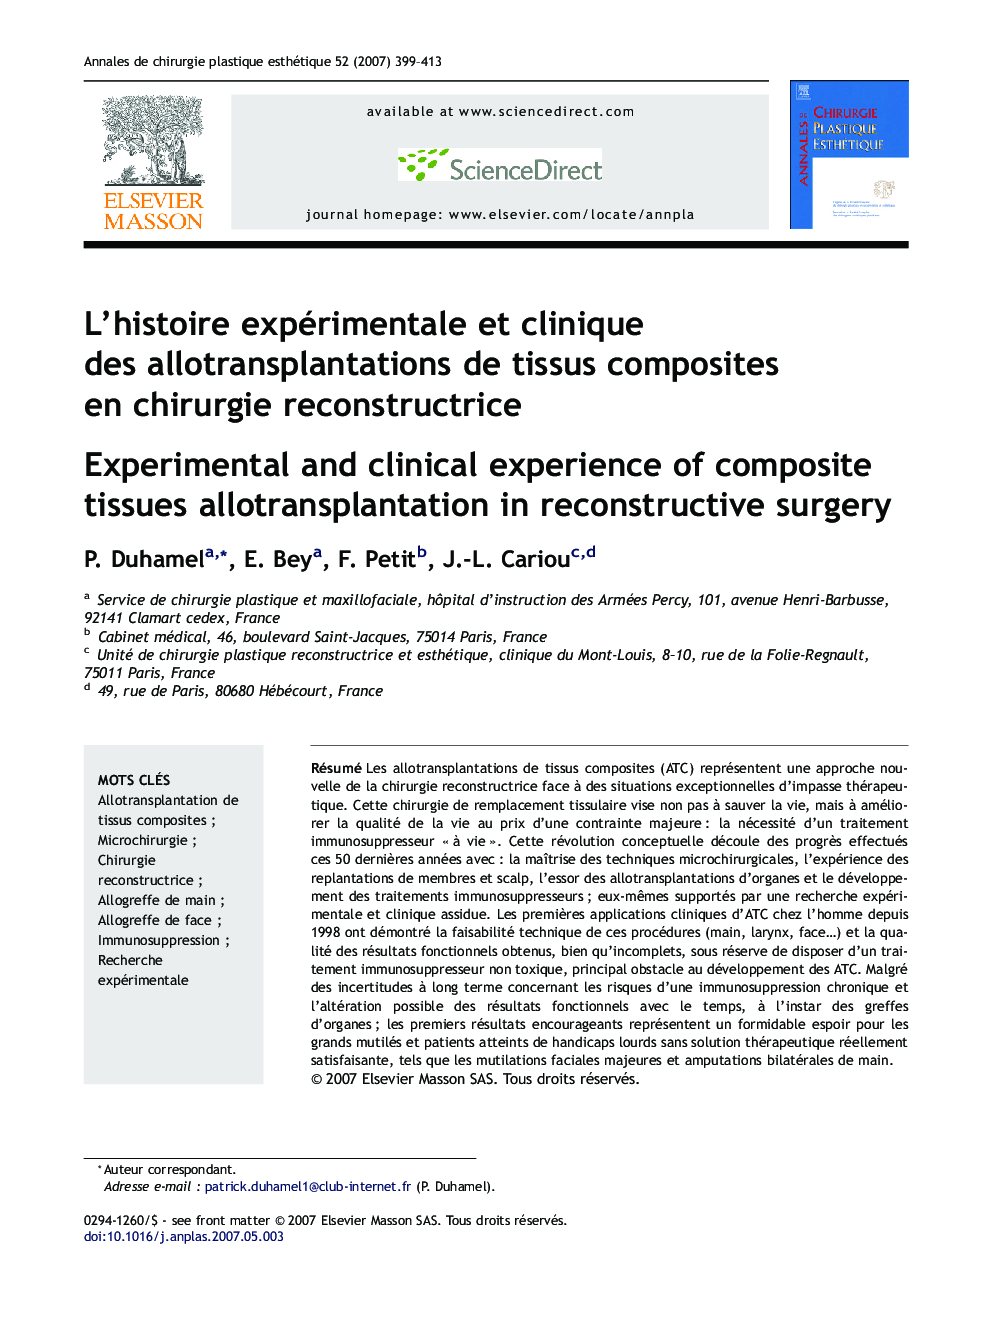 L'histoire expérimentale et clinique des allotransplantations de tissus composites en chirurgie reconstructrice